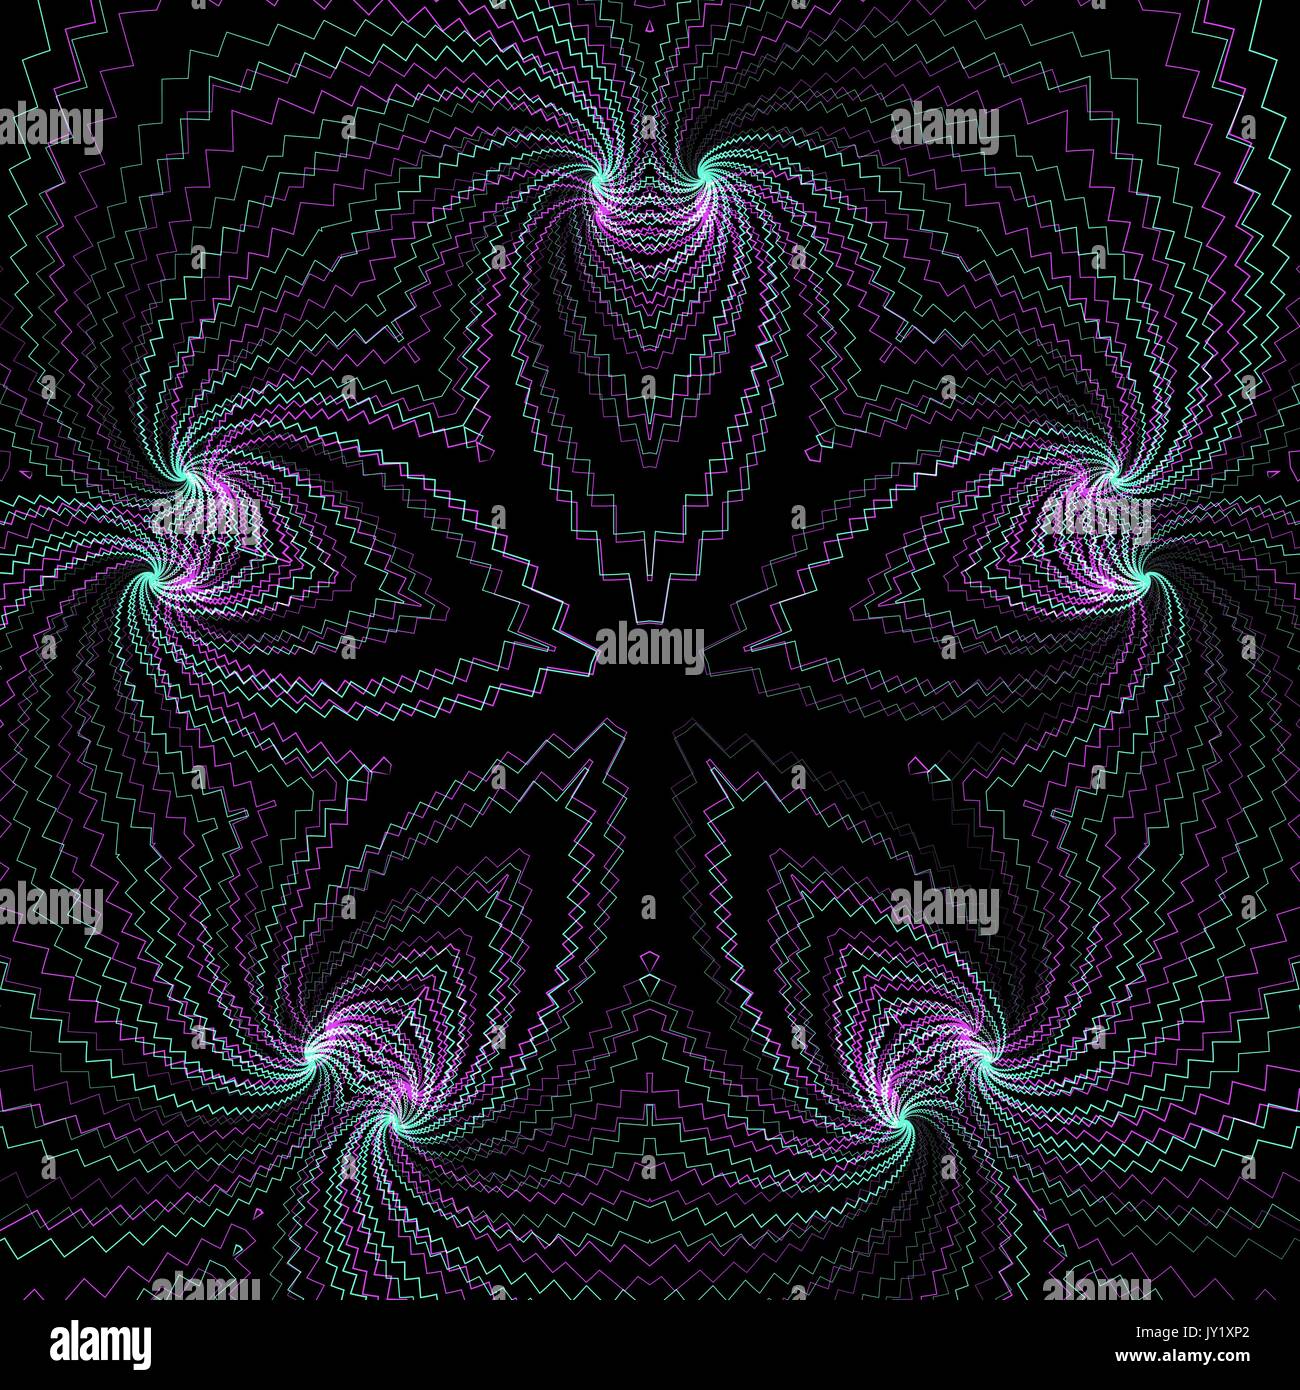 Vektor abstraktes fraktale Geometrie Dekoration anaglif farbige Dreidimensionale Darstellung schwarzer Hintergrund Stock Vektor